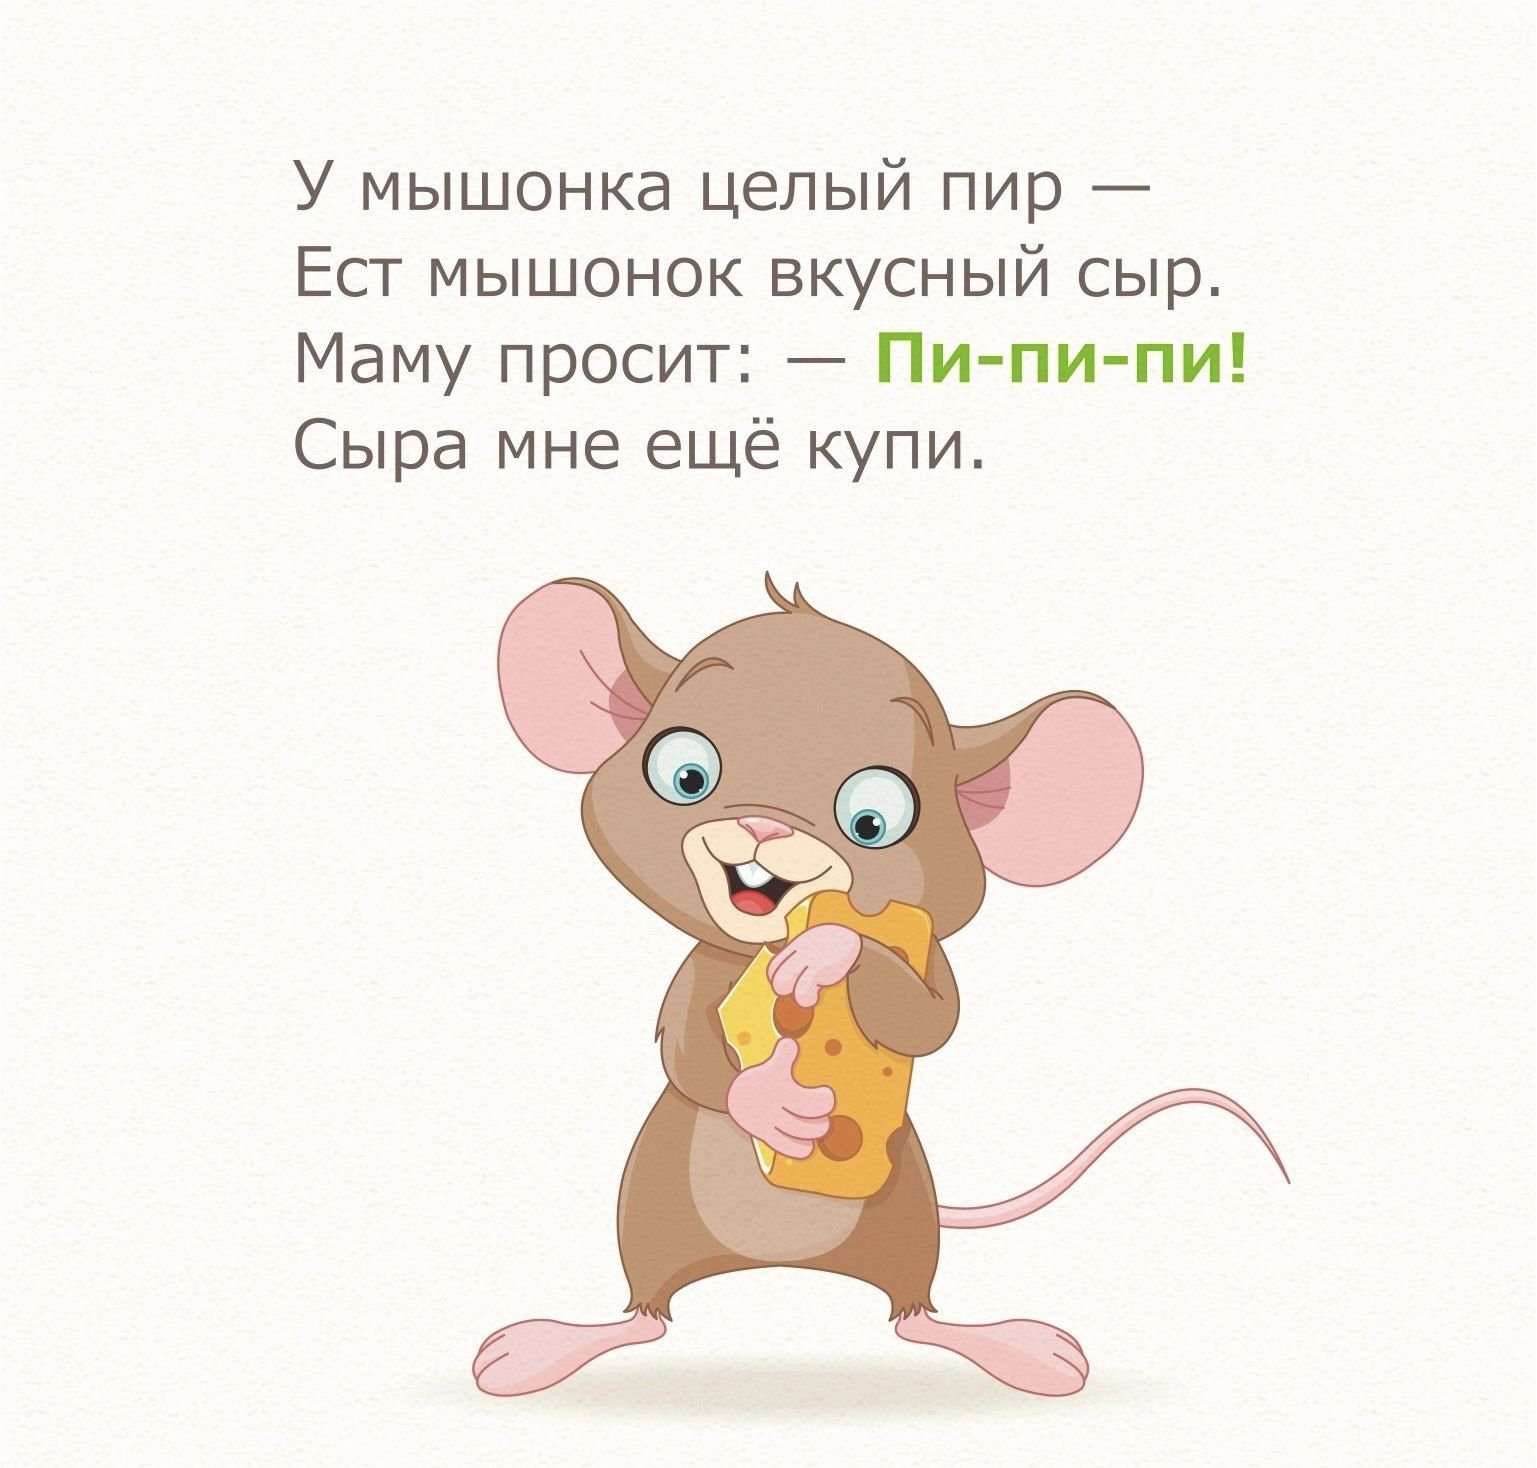 Мышь какая прилагательные. Стих про мышонка. Стих про мышку. Стих про мышку для детей. Стишки про мышек для детей.